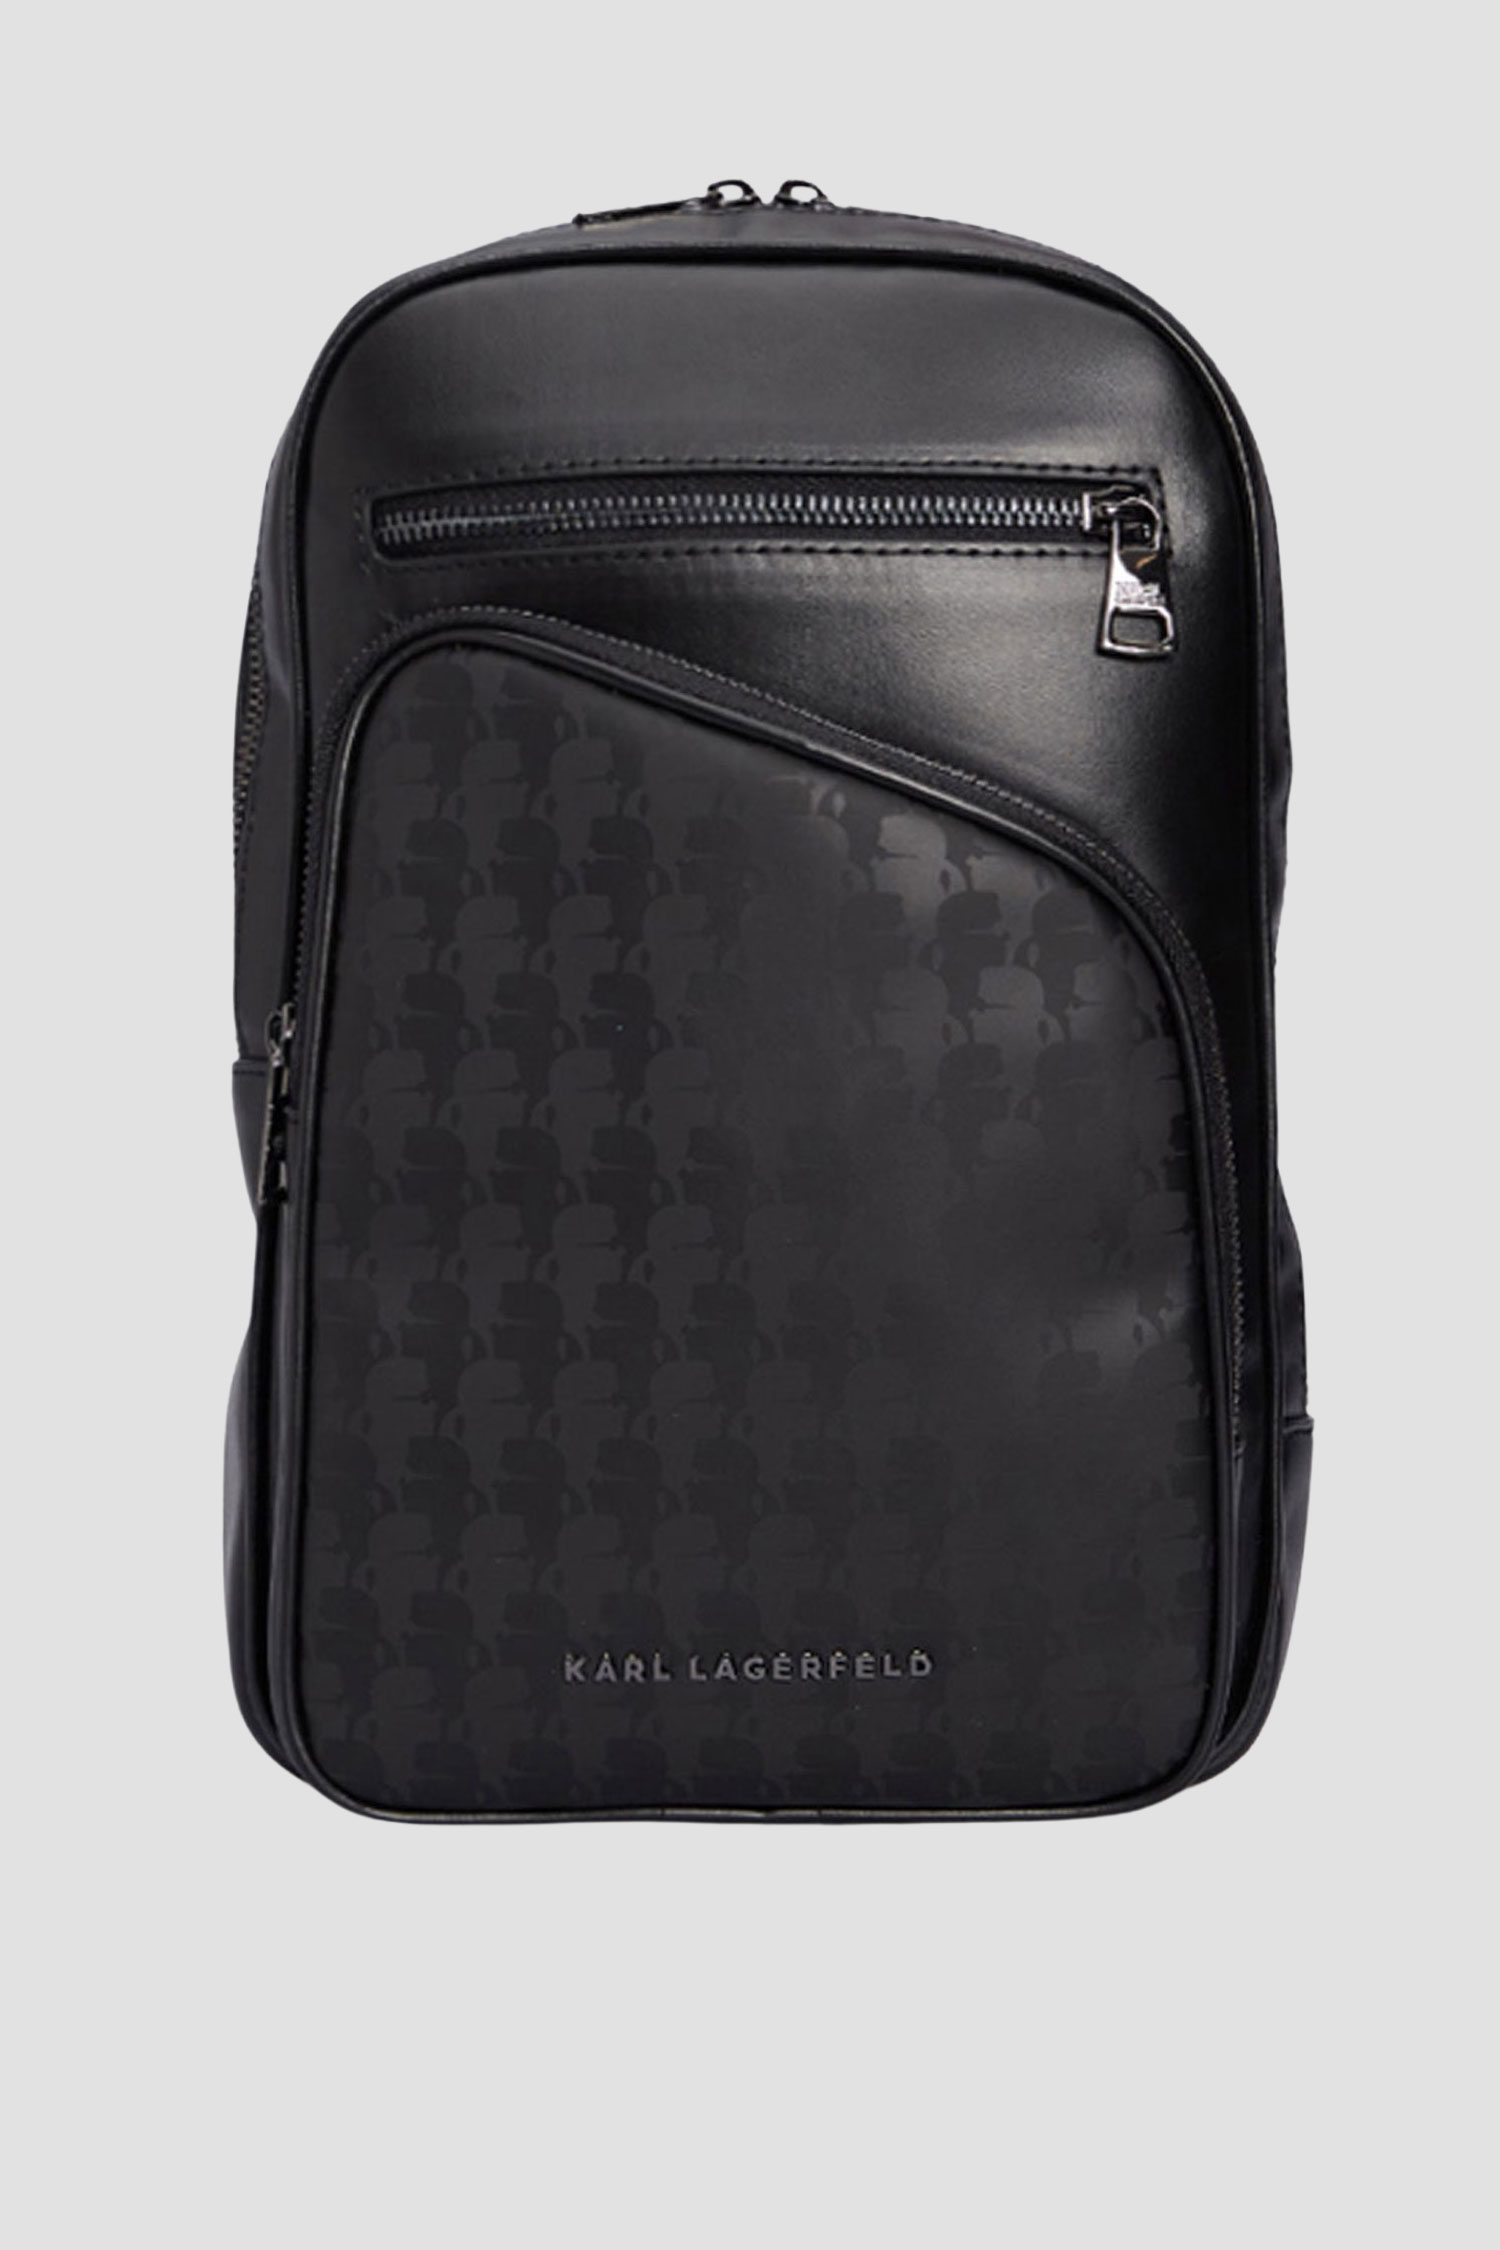 Мужская черная сумка Karl Lagerfeld 534114.805904;990